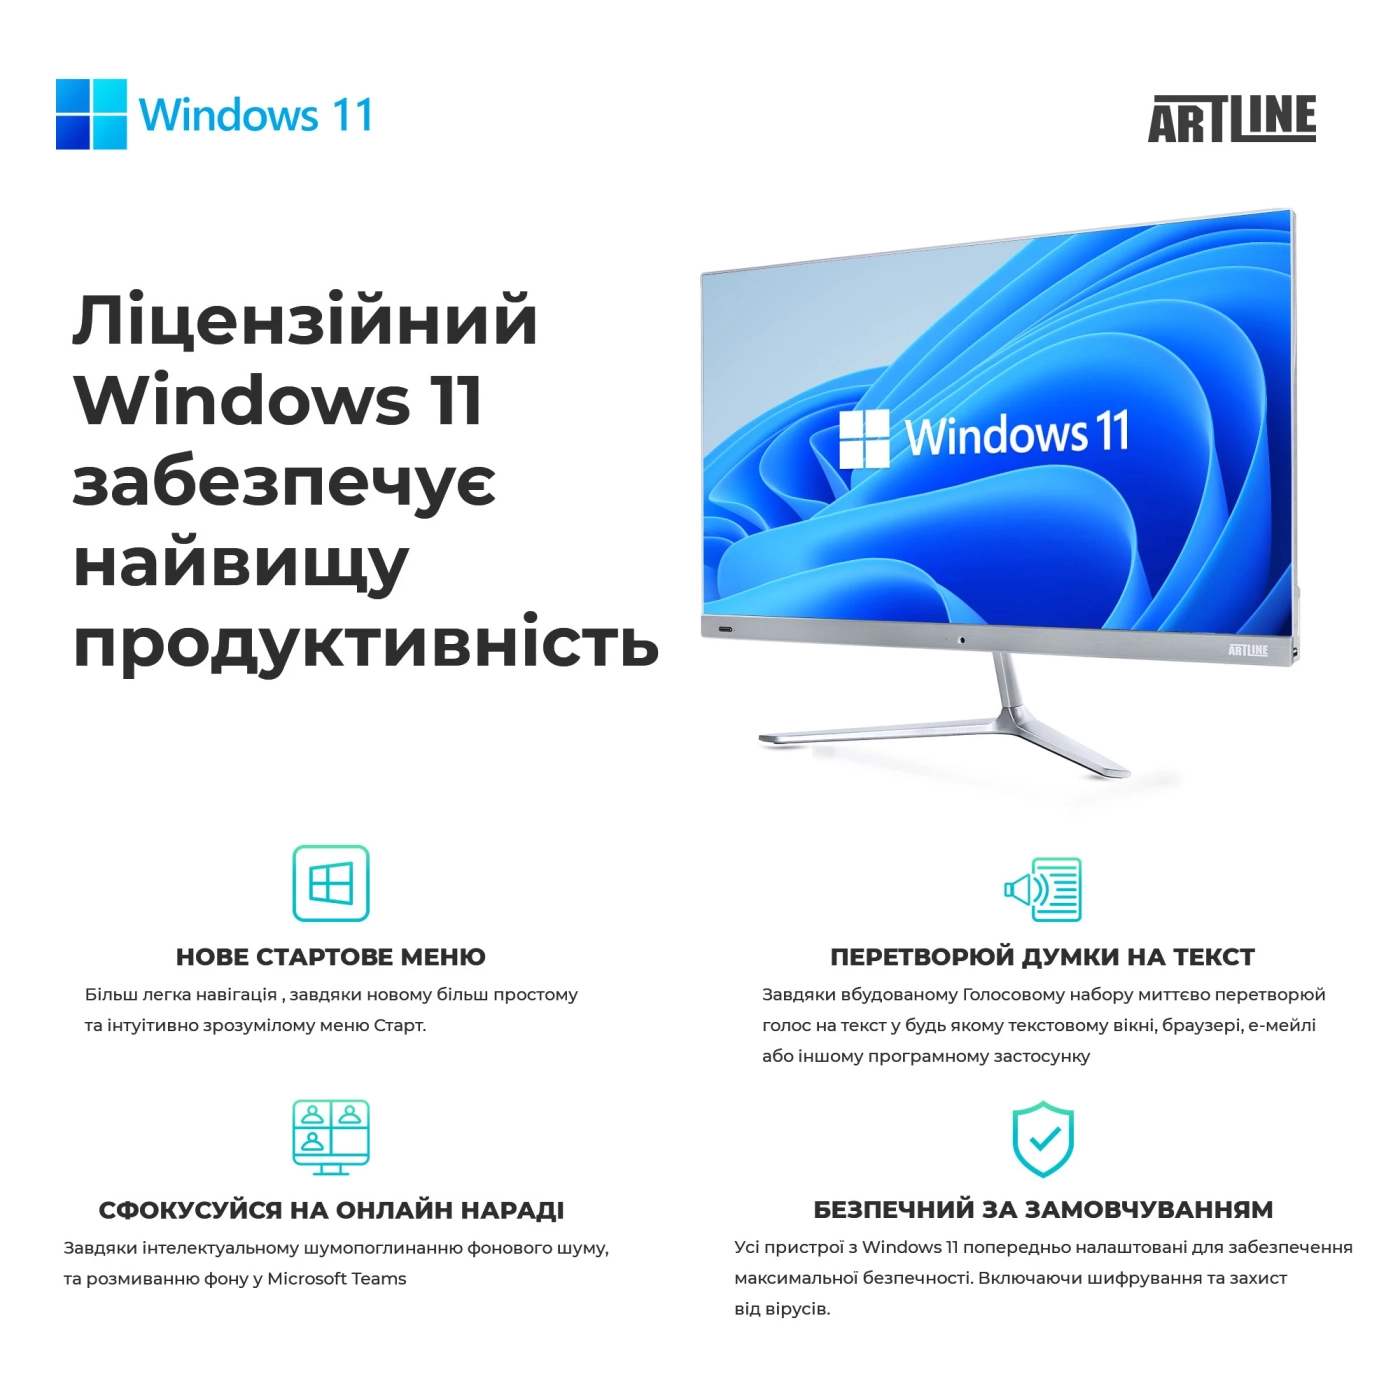 Купить Рабочая станция ARTLINE WorkStation W73 Windows 11 Pro (W73v21Win) - фото 8